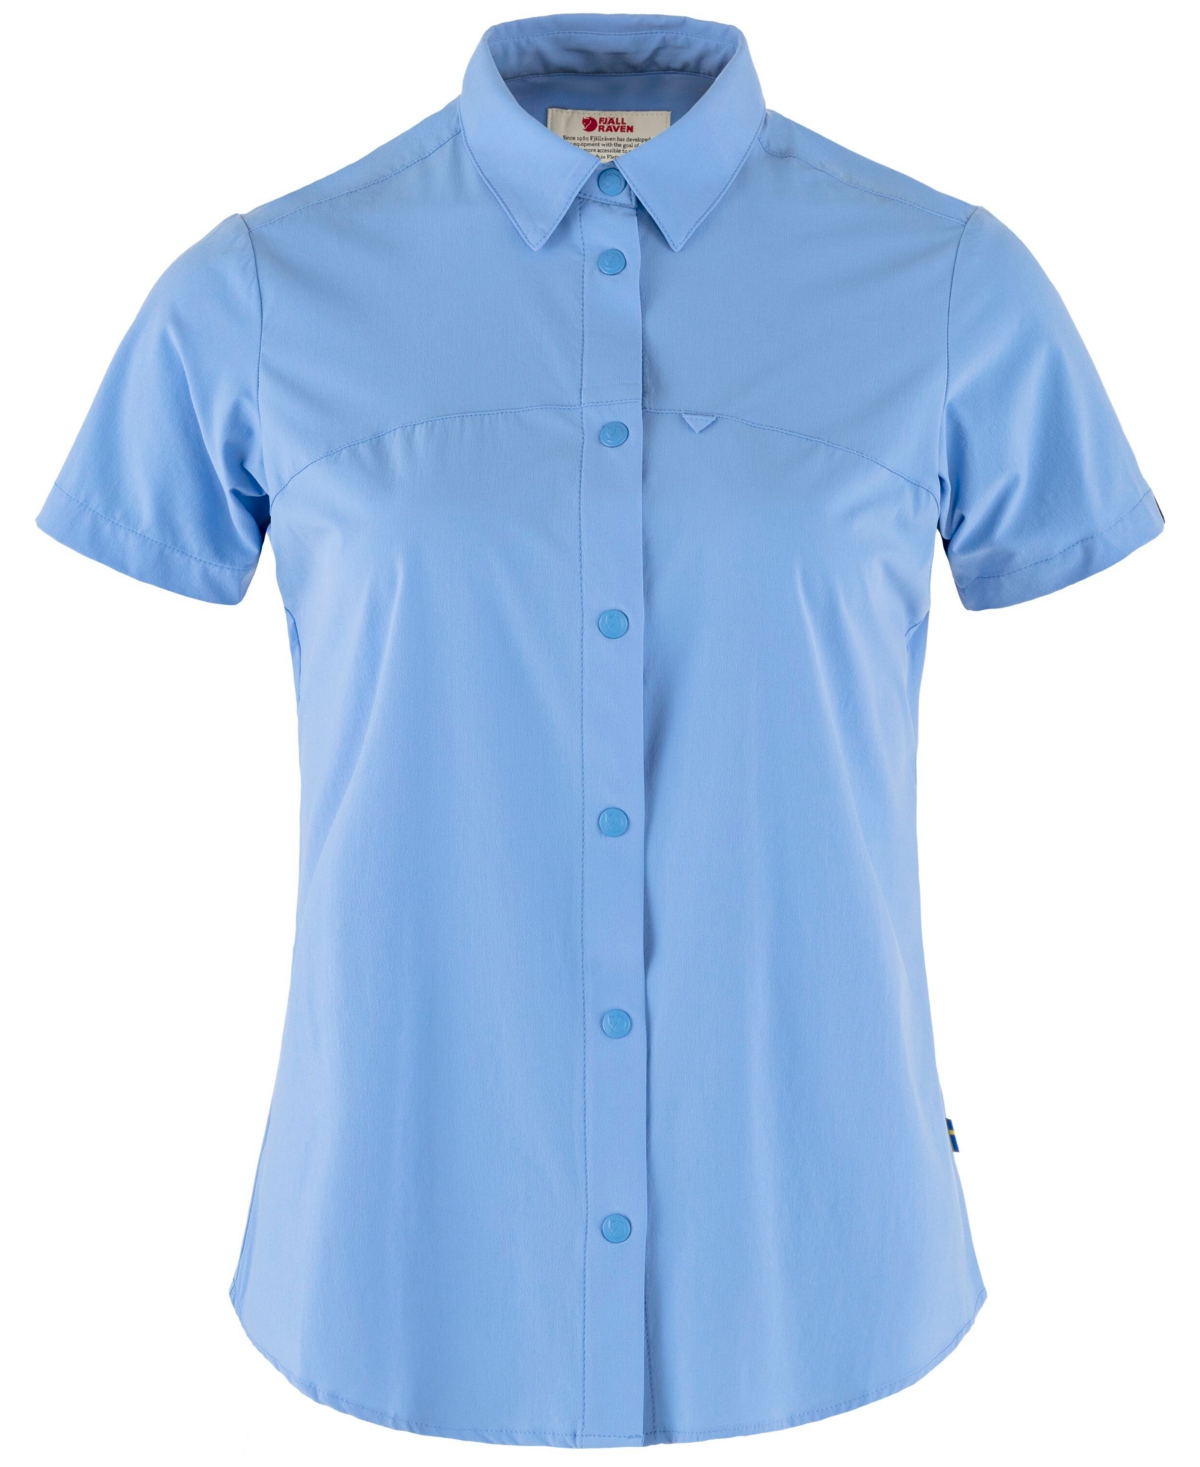 Women's High Coast Lite Short-Sleeve Shirt - ULTRAMARINE